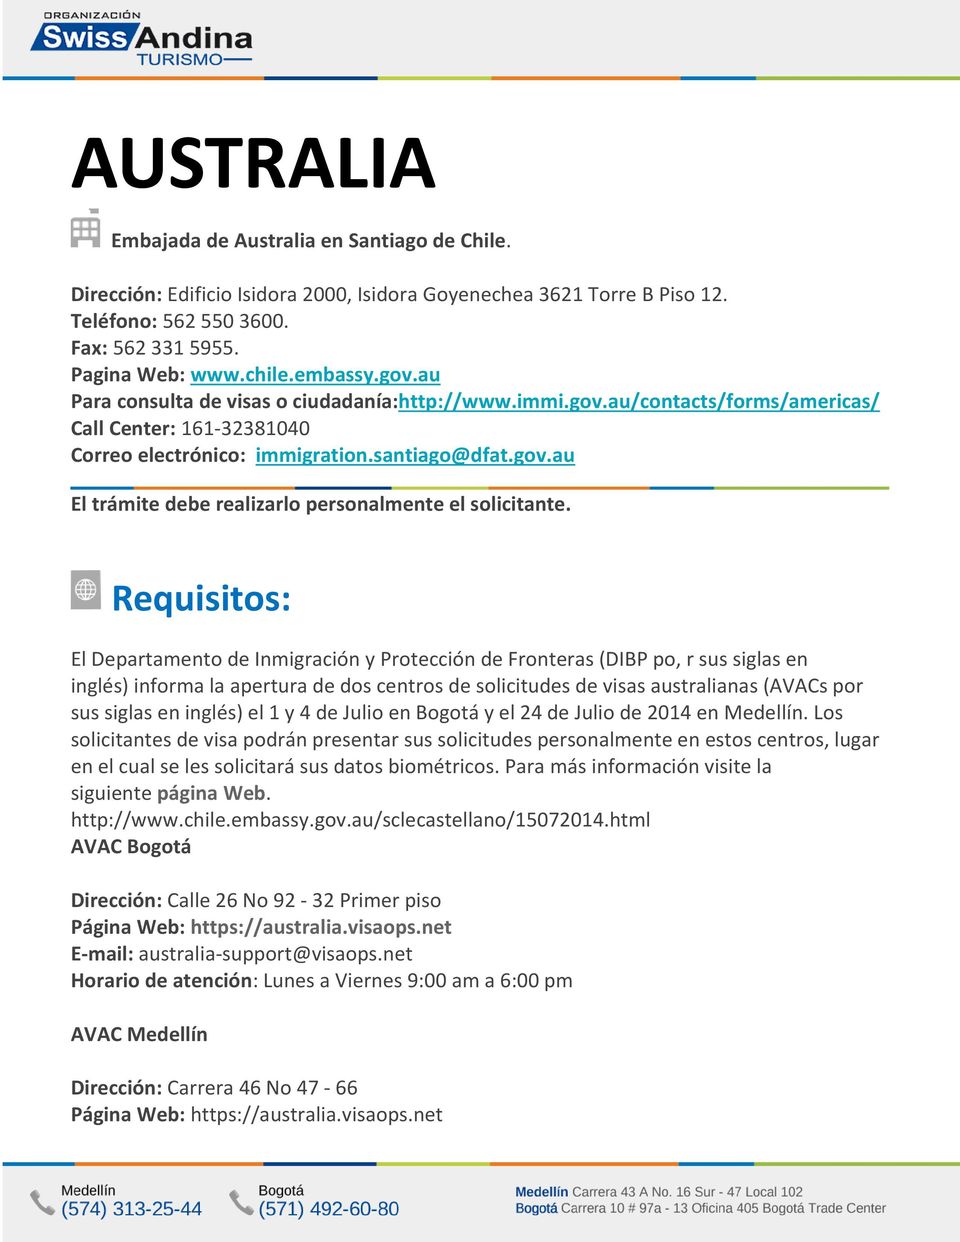 Requisitos: El Departamento de Inmigración y Protección de Fronteras (DIBP po, r sus siglas en inglés) informa la apertura de dos centros de solicitudes de visas australianas (AVACs por sus siglas en